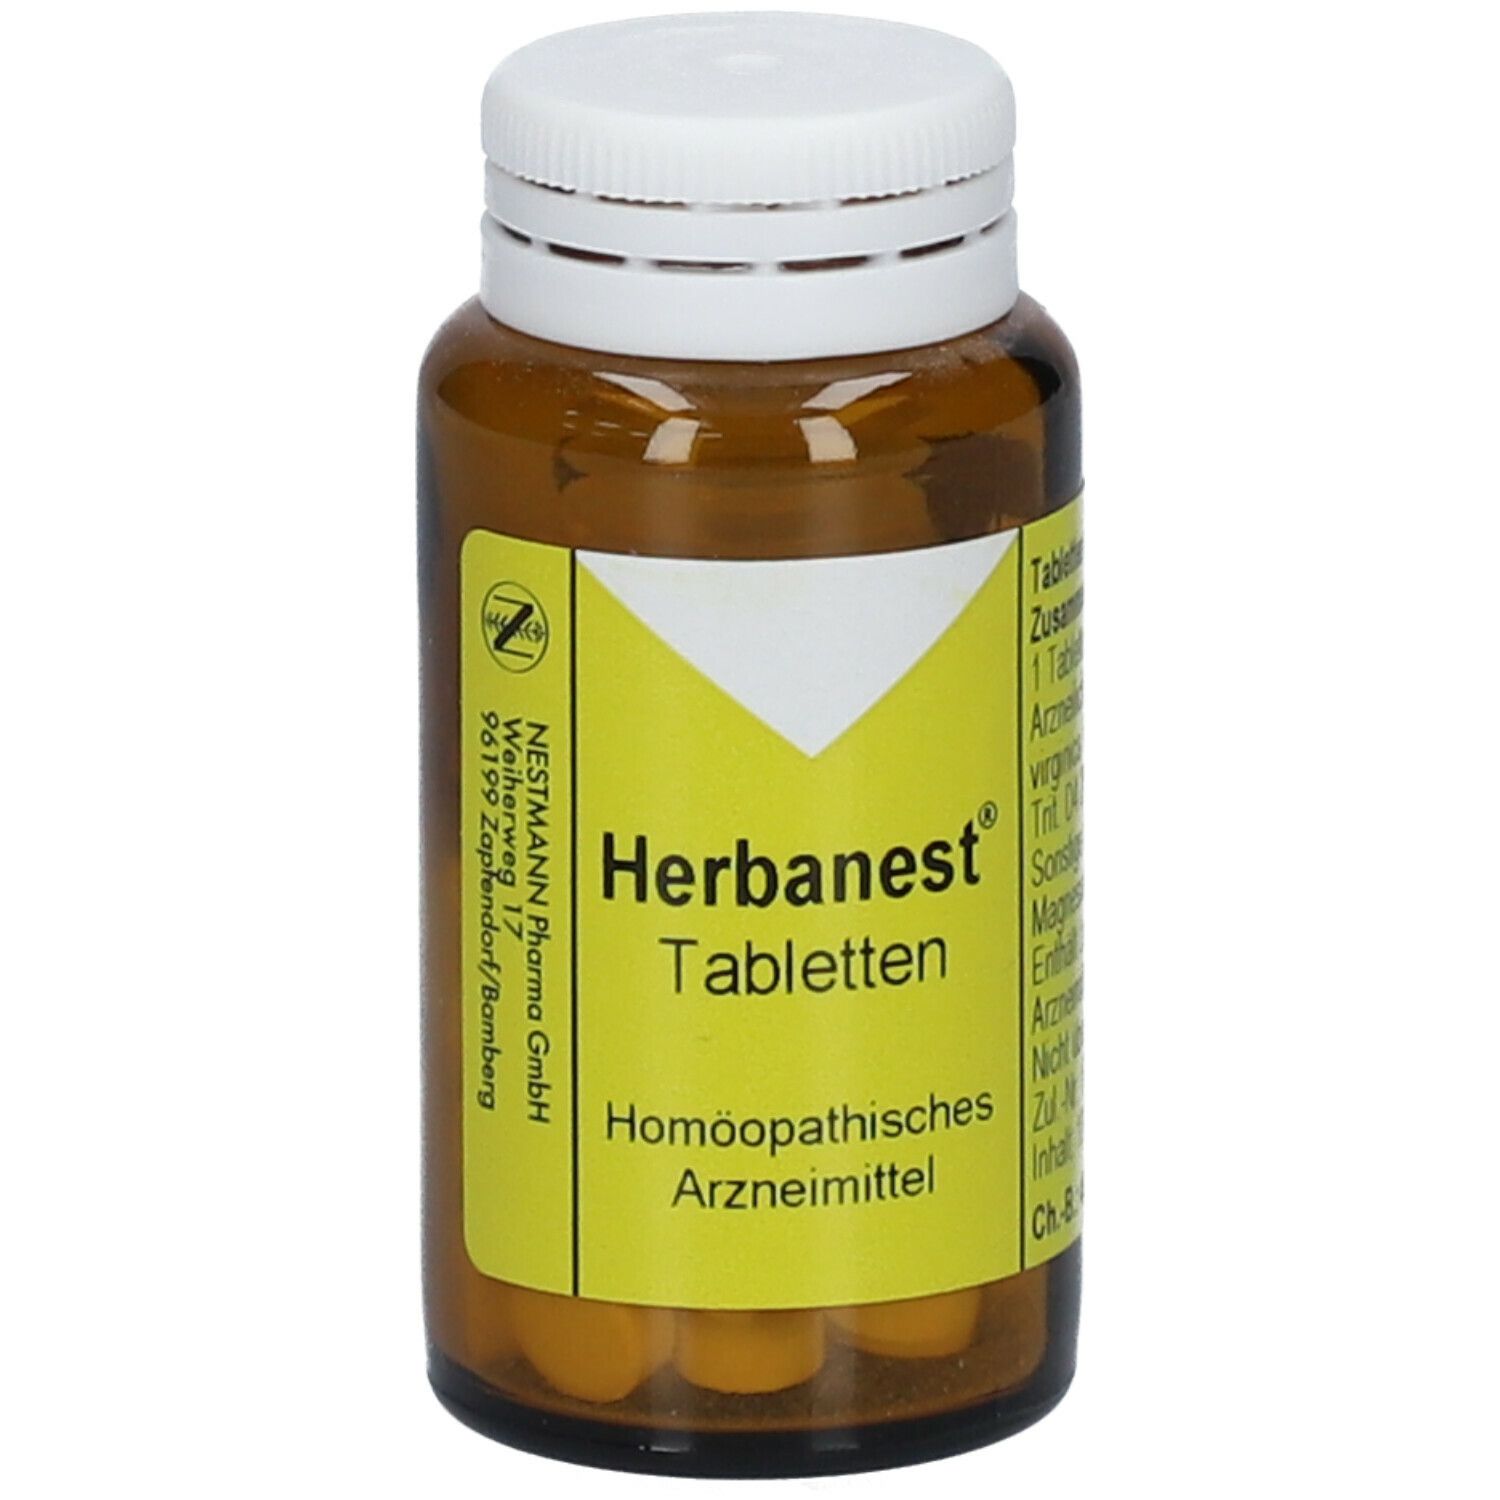 Herbanest® Tabletten